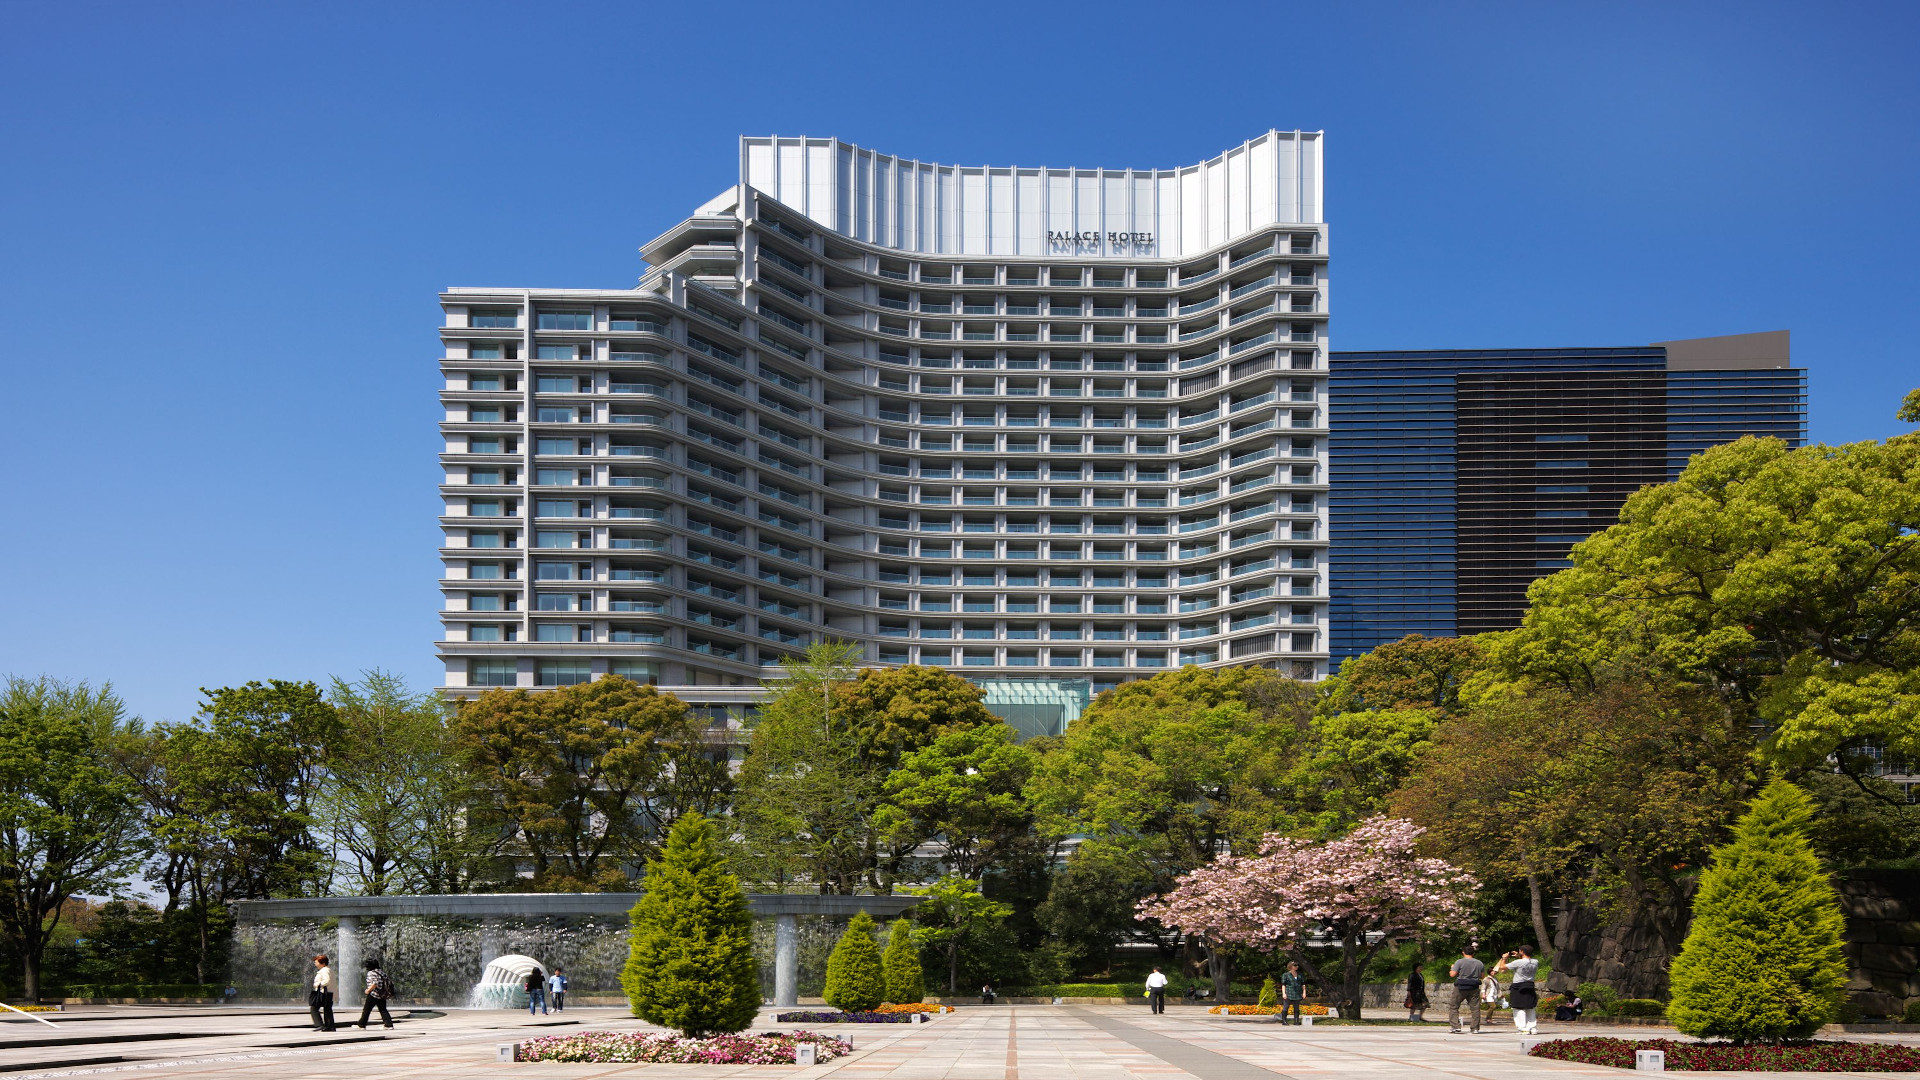 The Palace Hotel Tokyo, Tokio